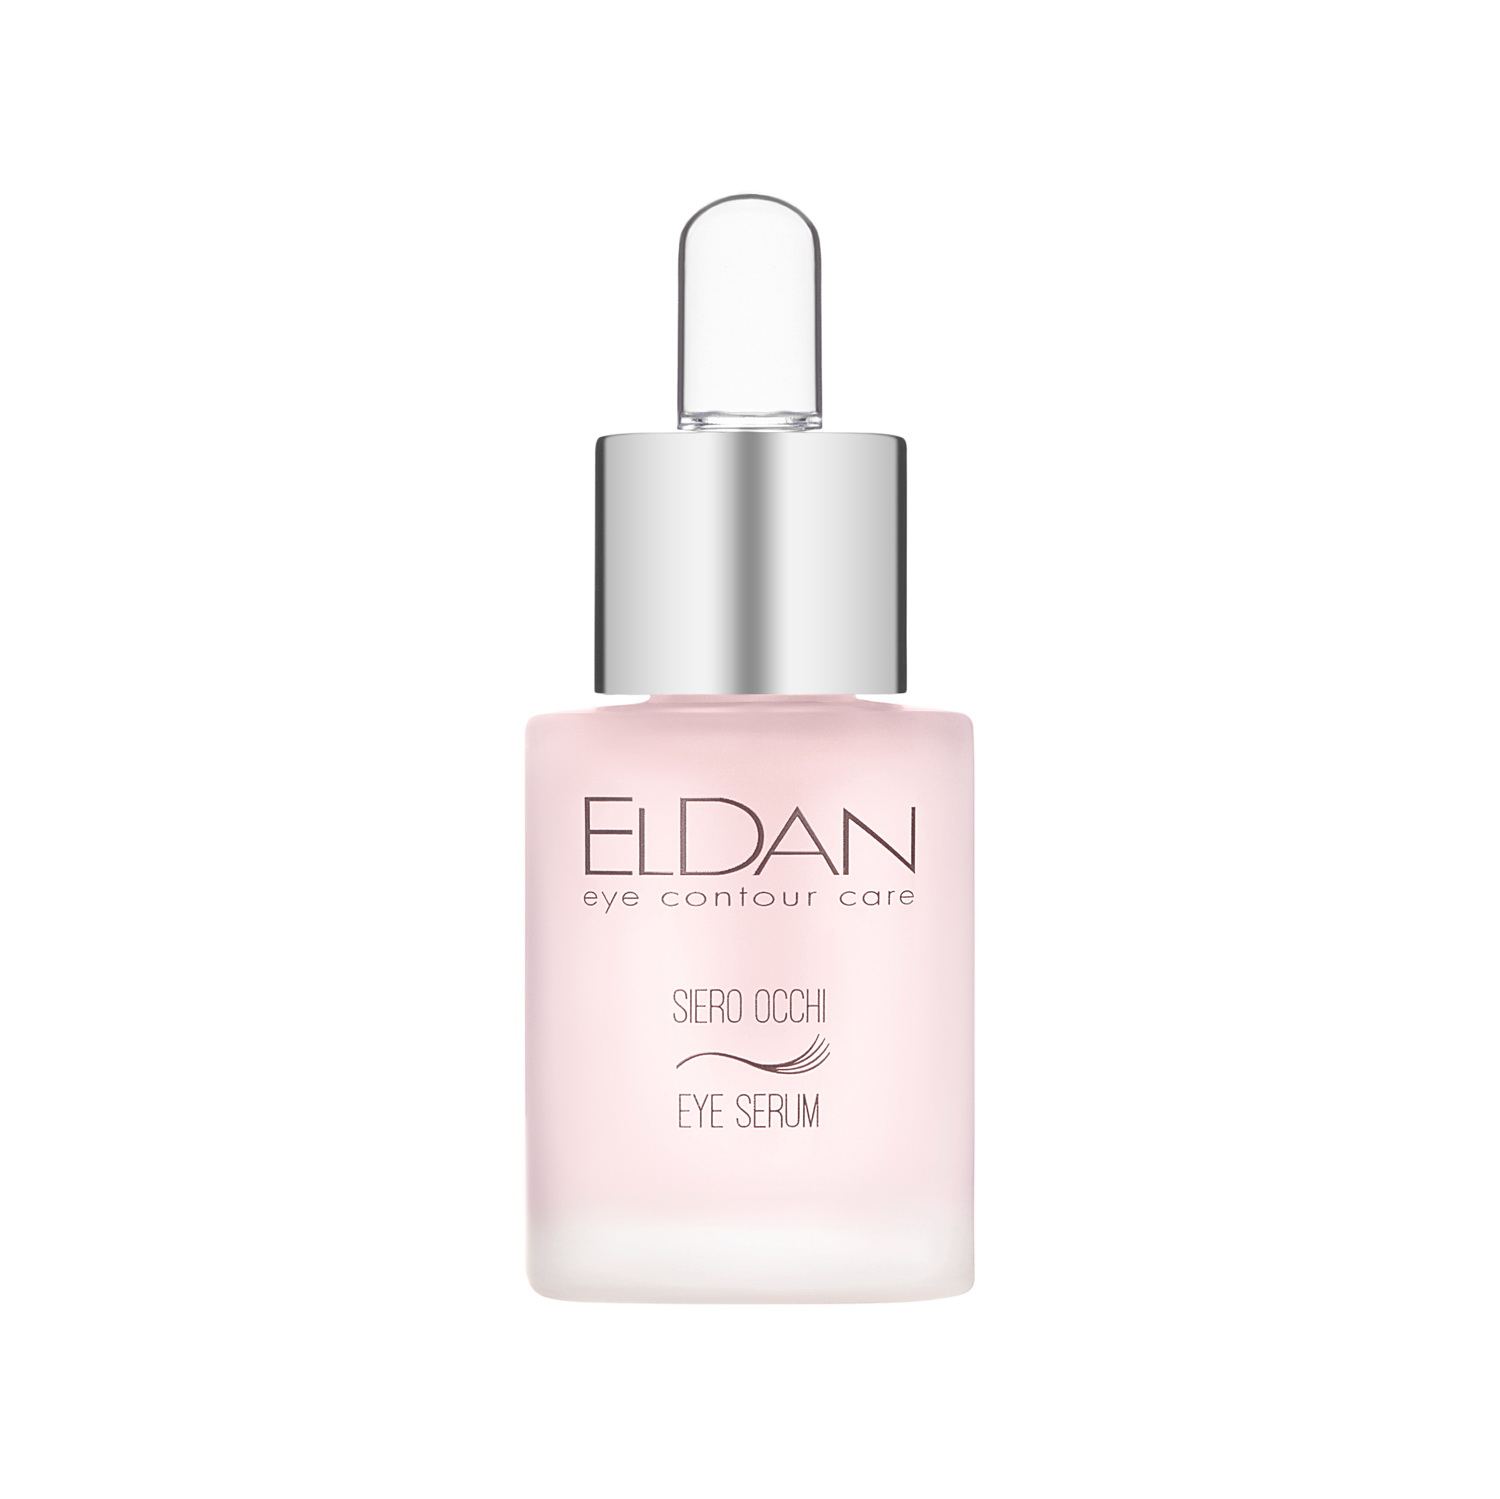 Сыворотка для глаз Eldan Cosmetics Eye Serum для всех типов кожи, 15 мл сыворотка для сияния кожи лица с витамином с 13% cosrx the vitamin c 13 serum